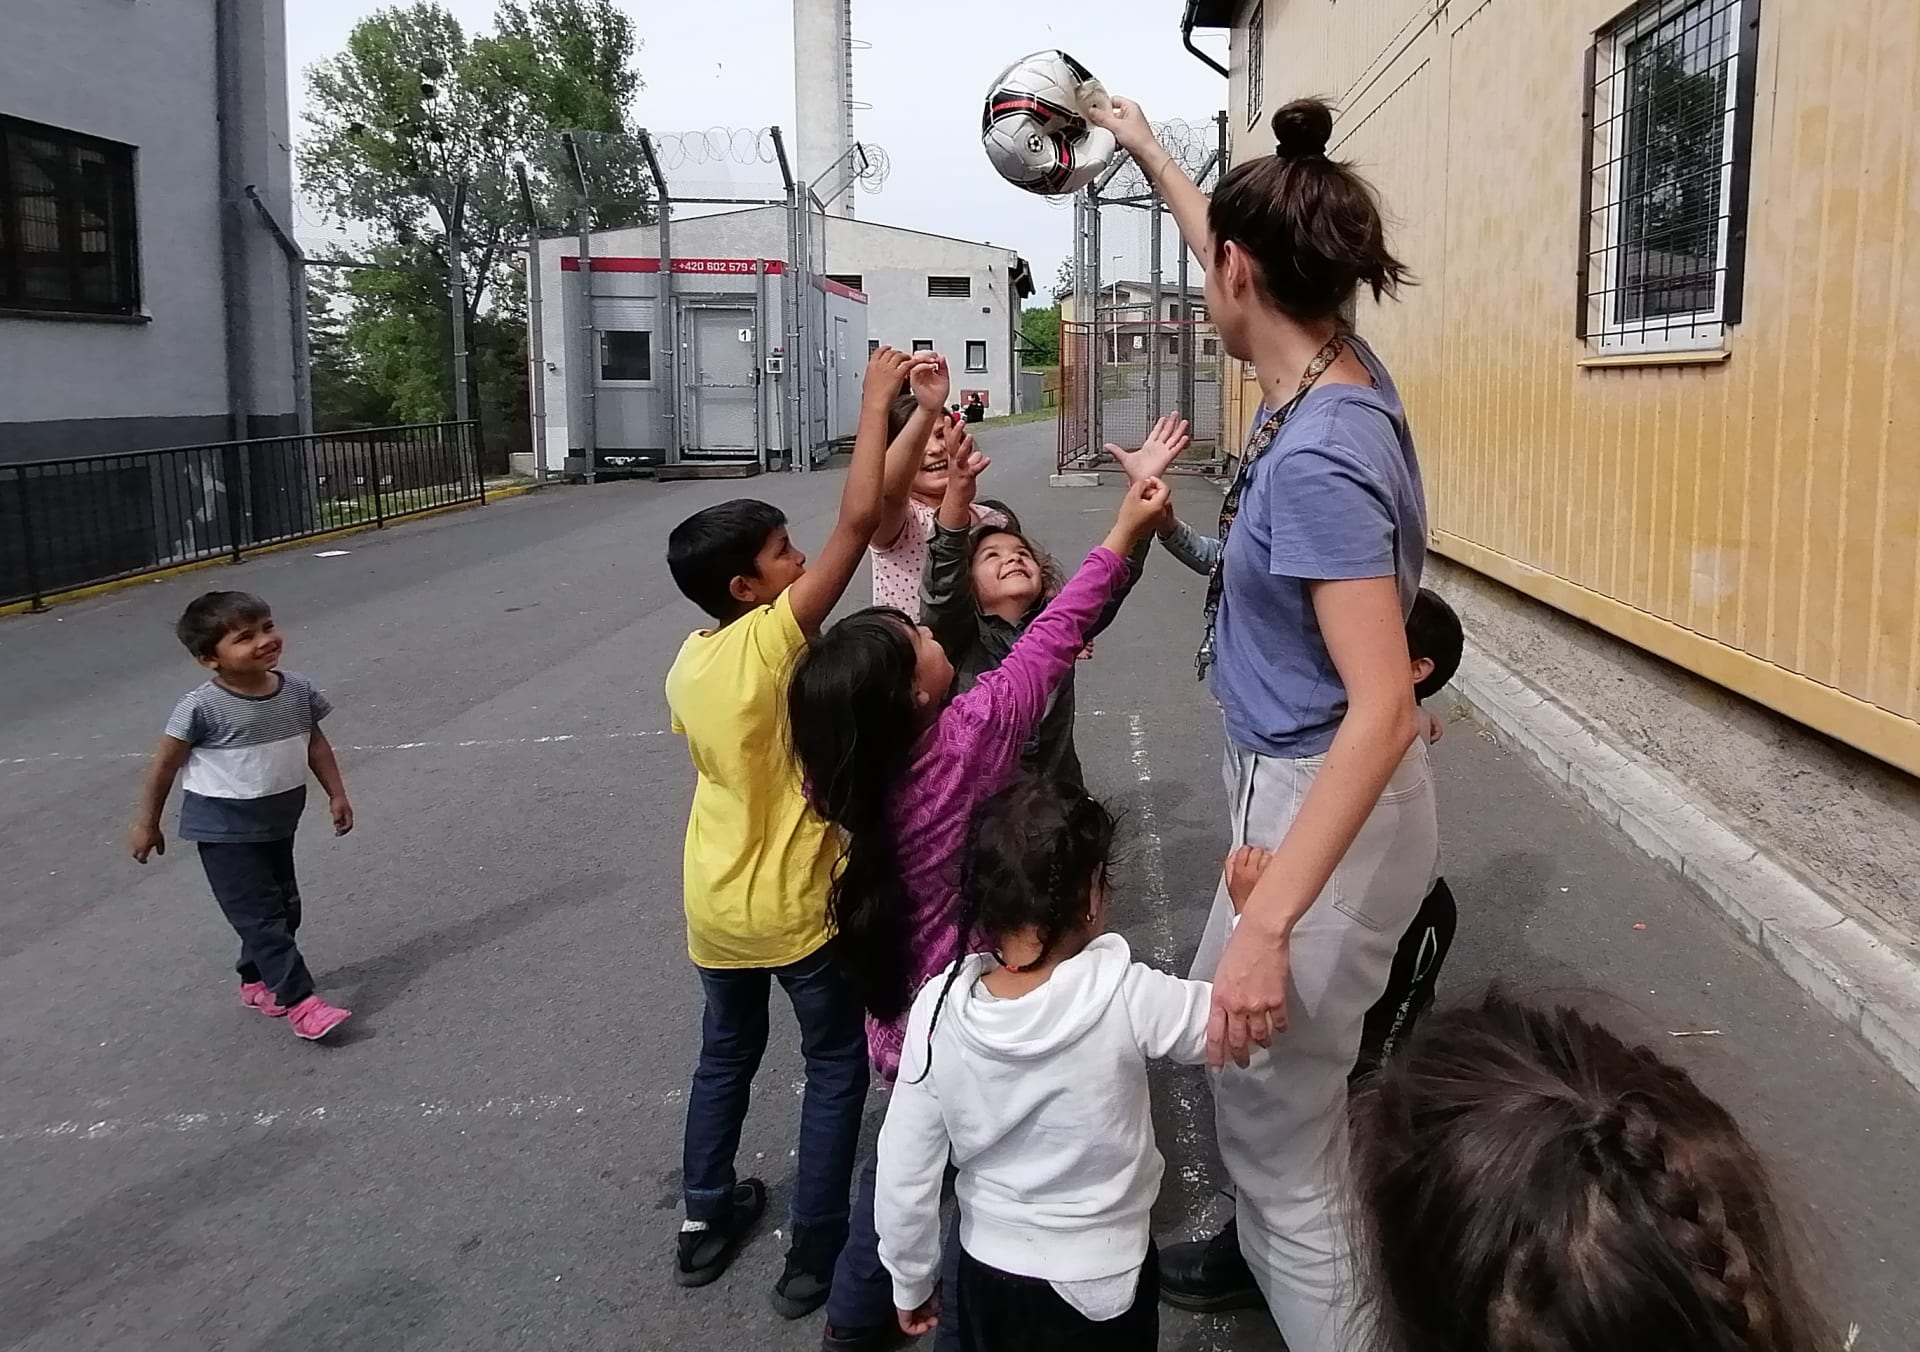 Uprchlický tábor ve Vyšních Lhotách. Španělská studentka se snaží zabavit děti běženců.